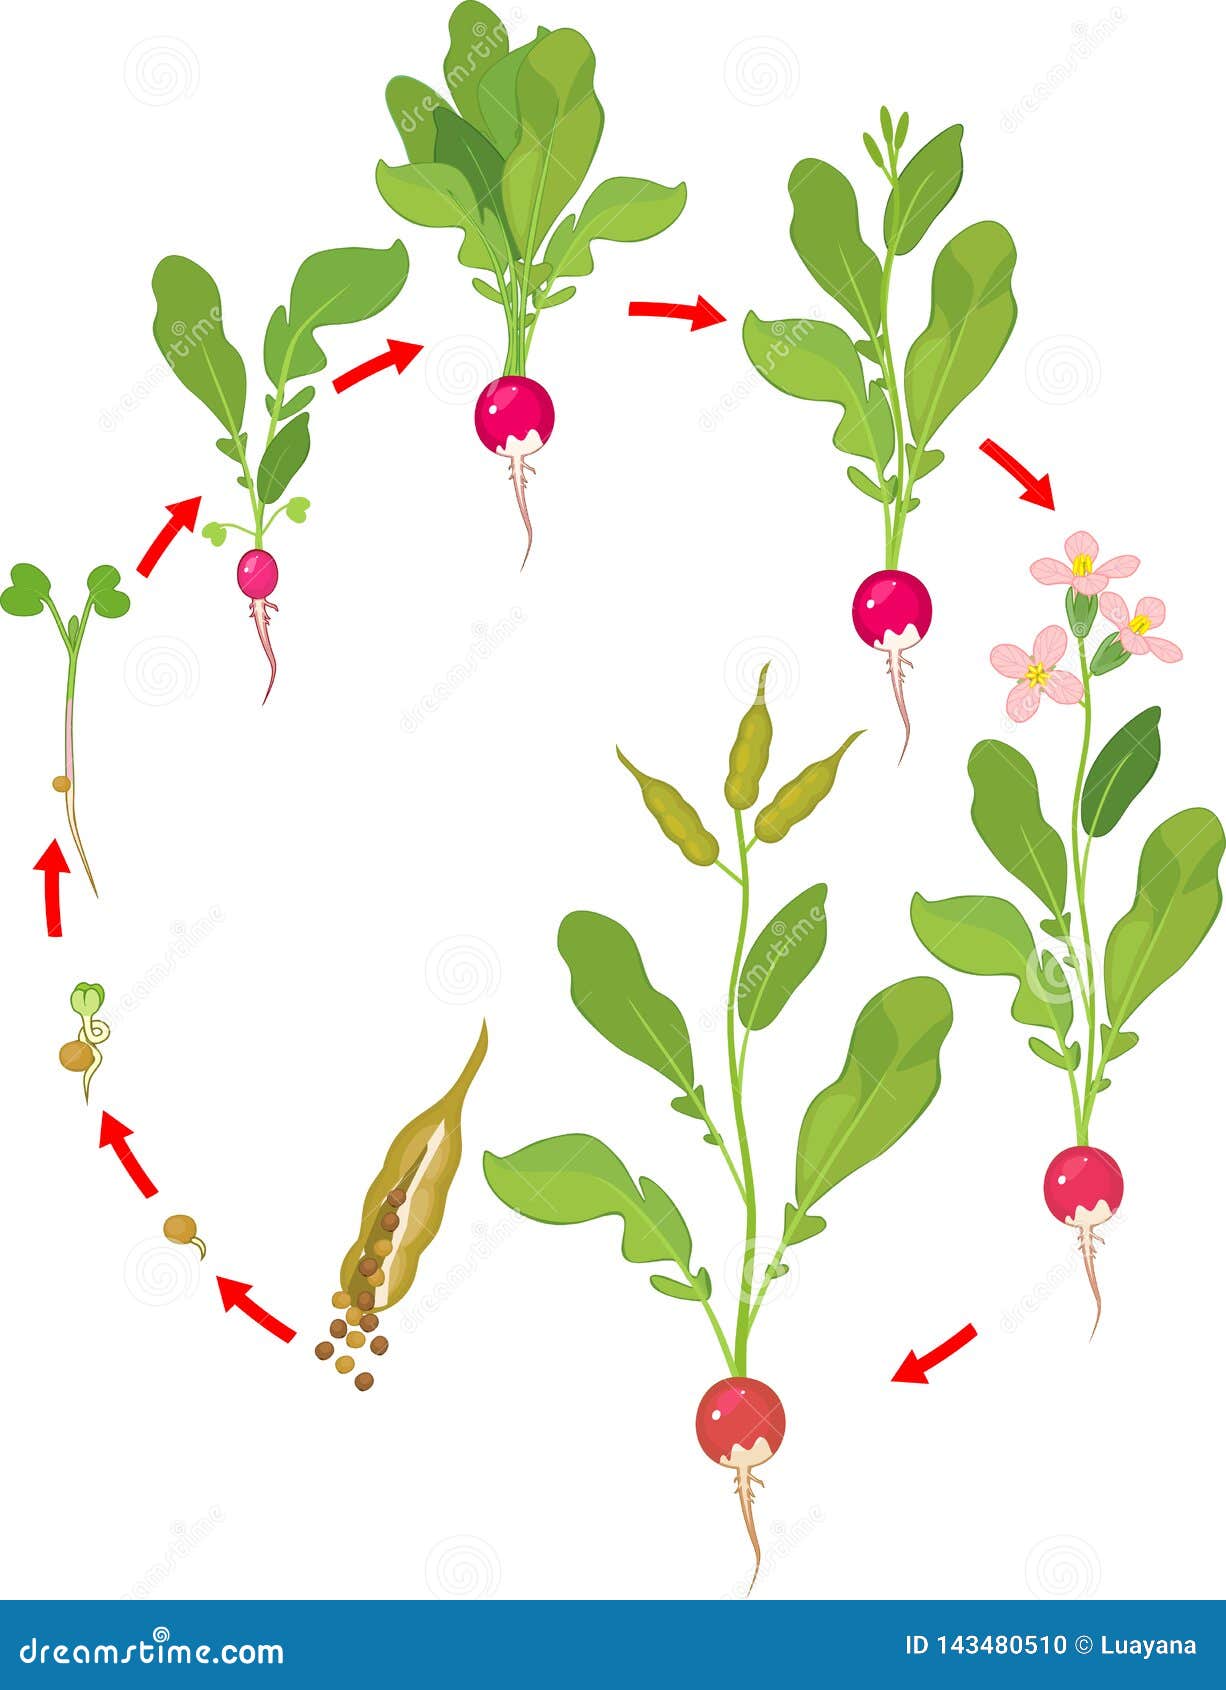 Жизненный цикл овощных растений по маркову. Редис фенофазы. Этапы прорастания редиса. Жизненный цикл редиса. Этапы роста редиса.